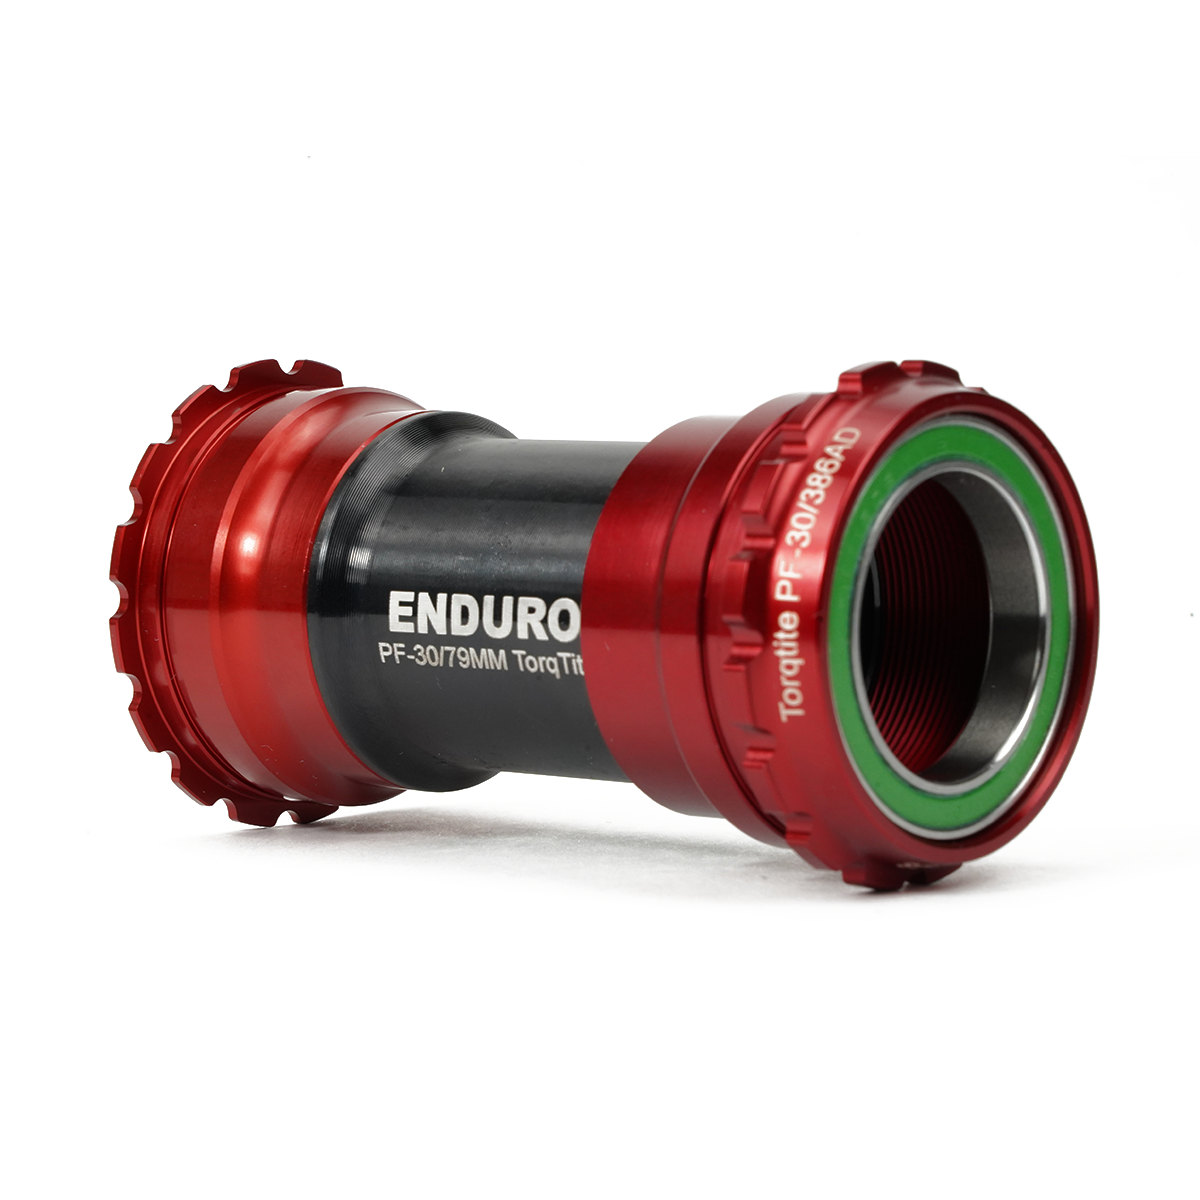 Enduro TorqTite XD-15 Pro BBRight for 30mm - Mangata Sport - Enduro Swim Bike Run Triathlon